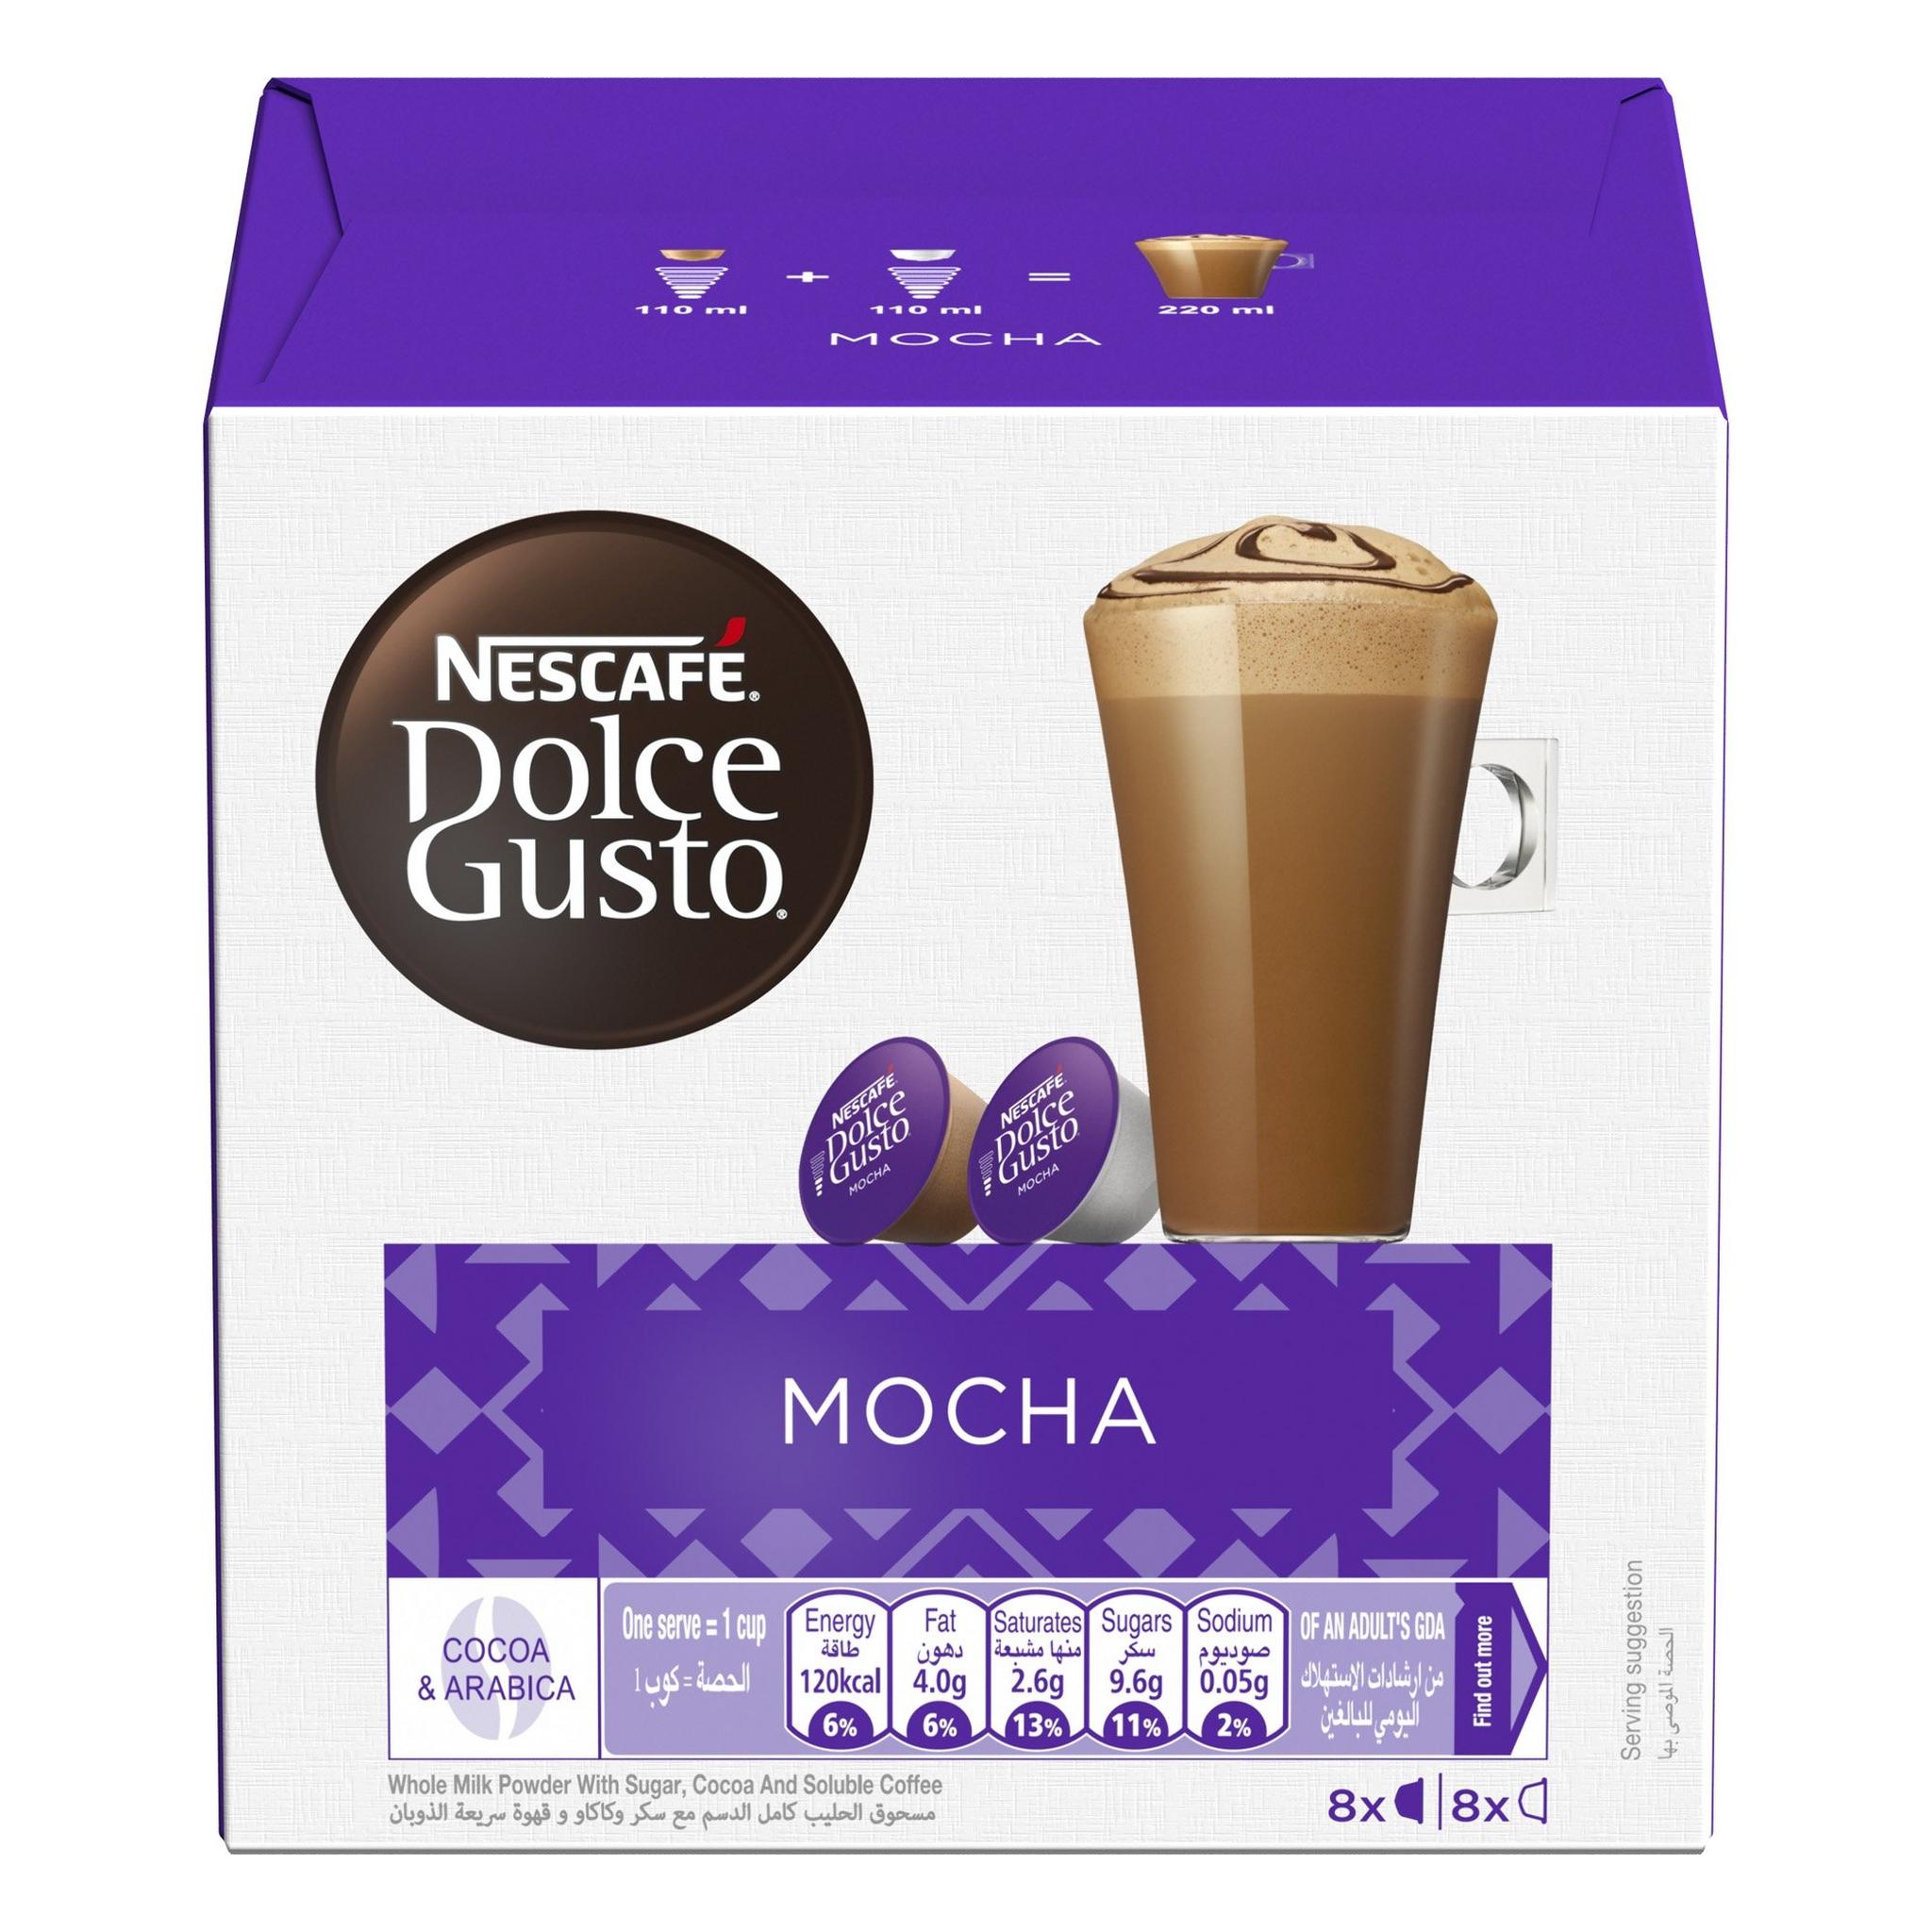 Dolce Gusto Nescafe Capsules – Mocha Flavor